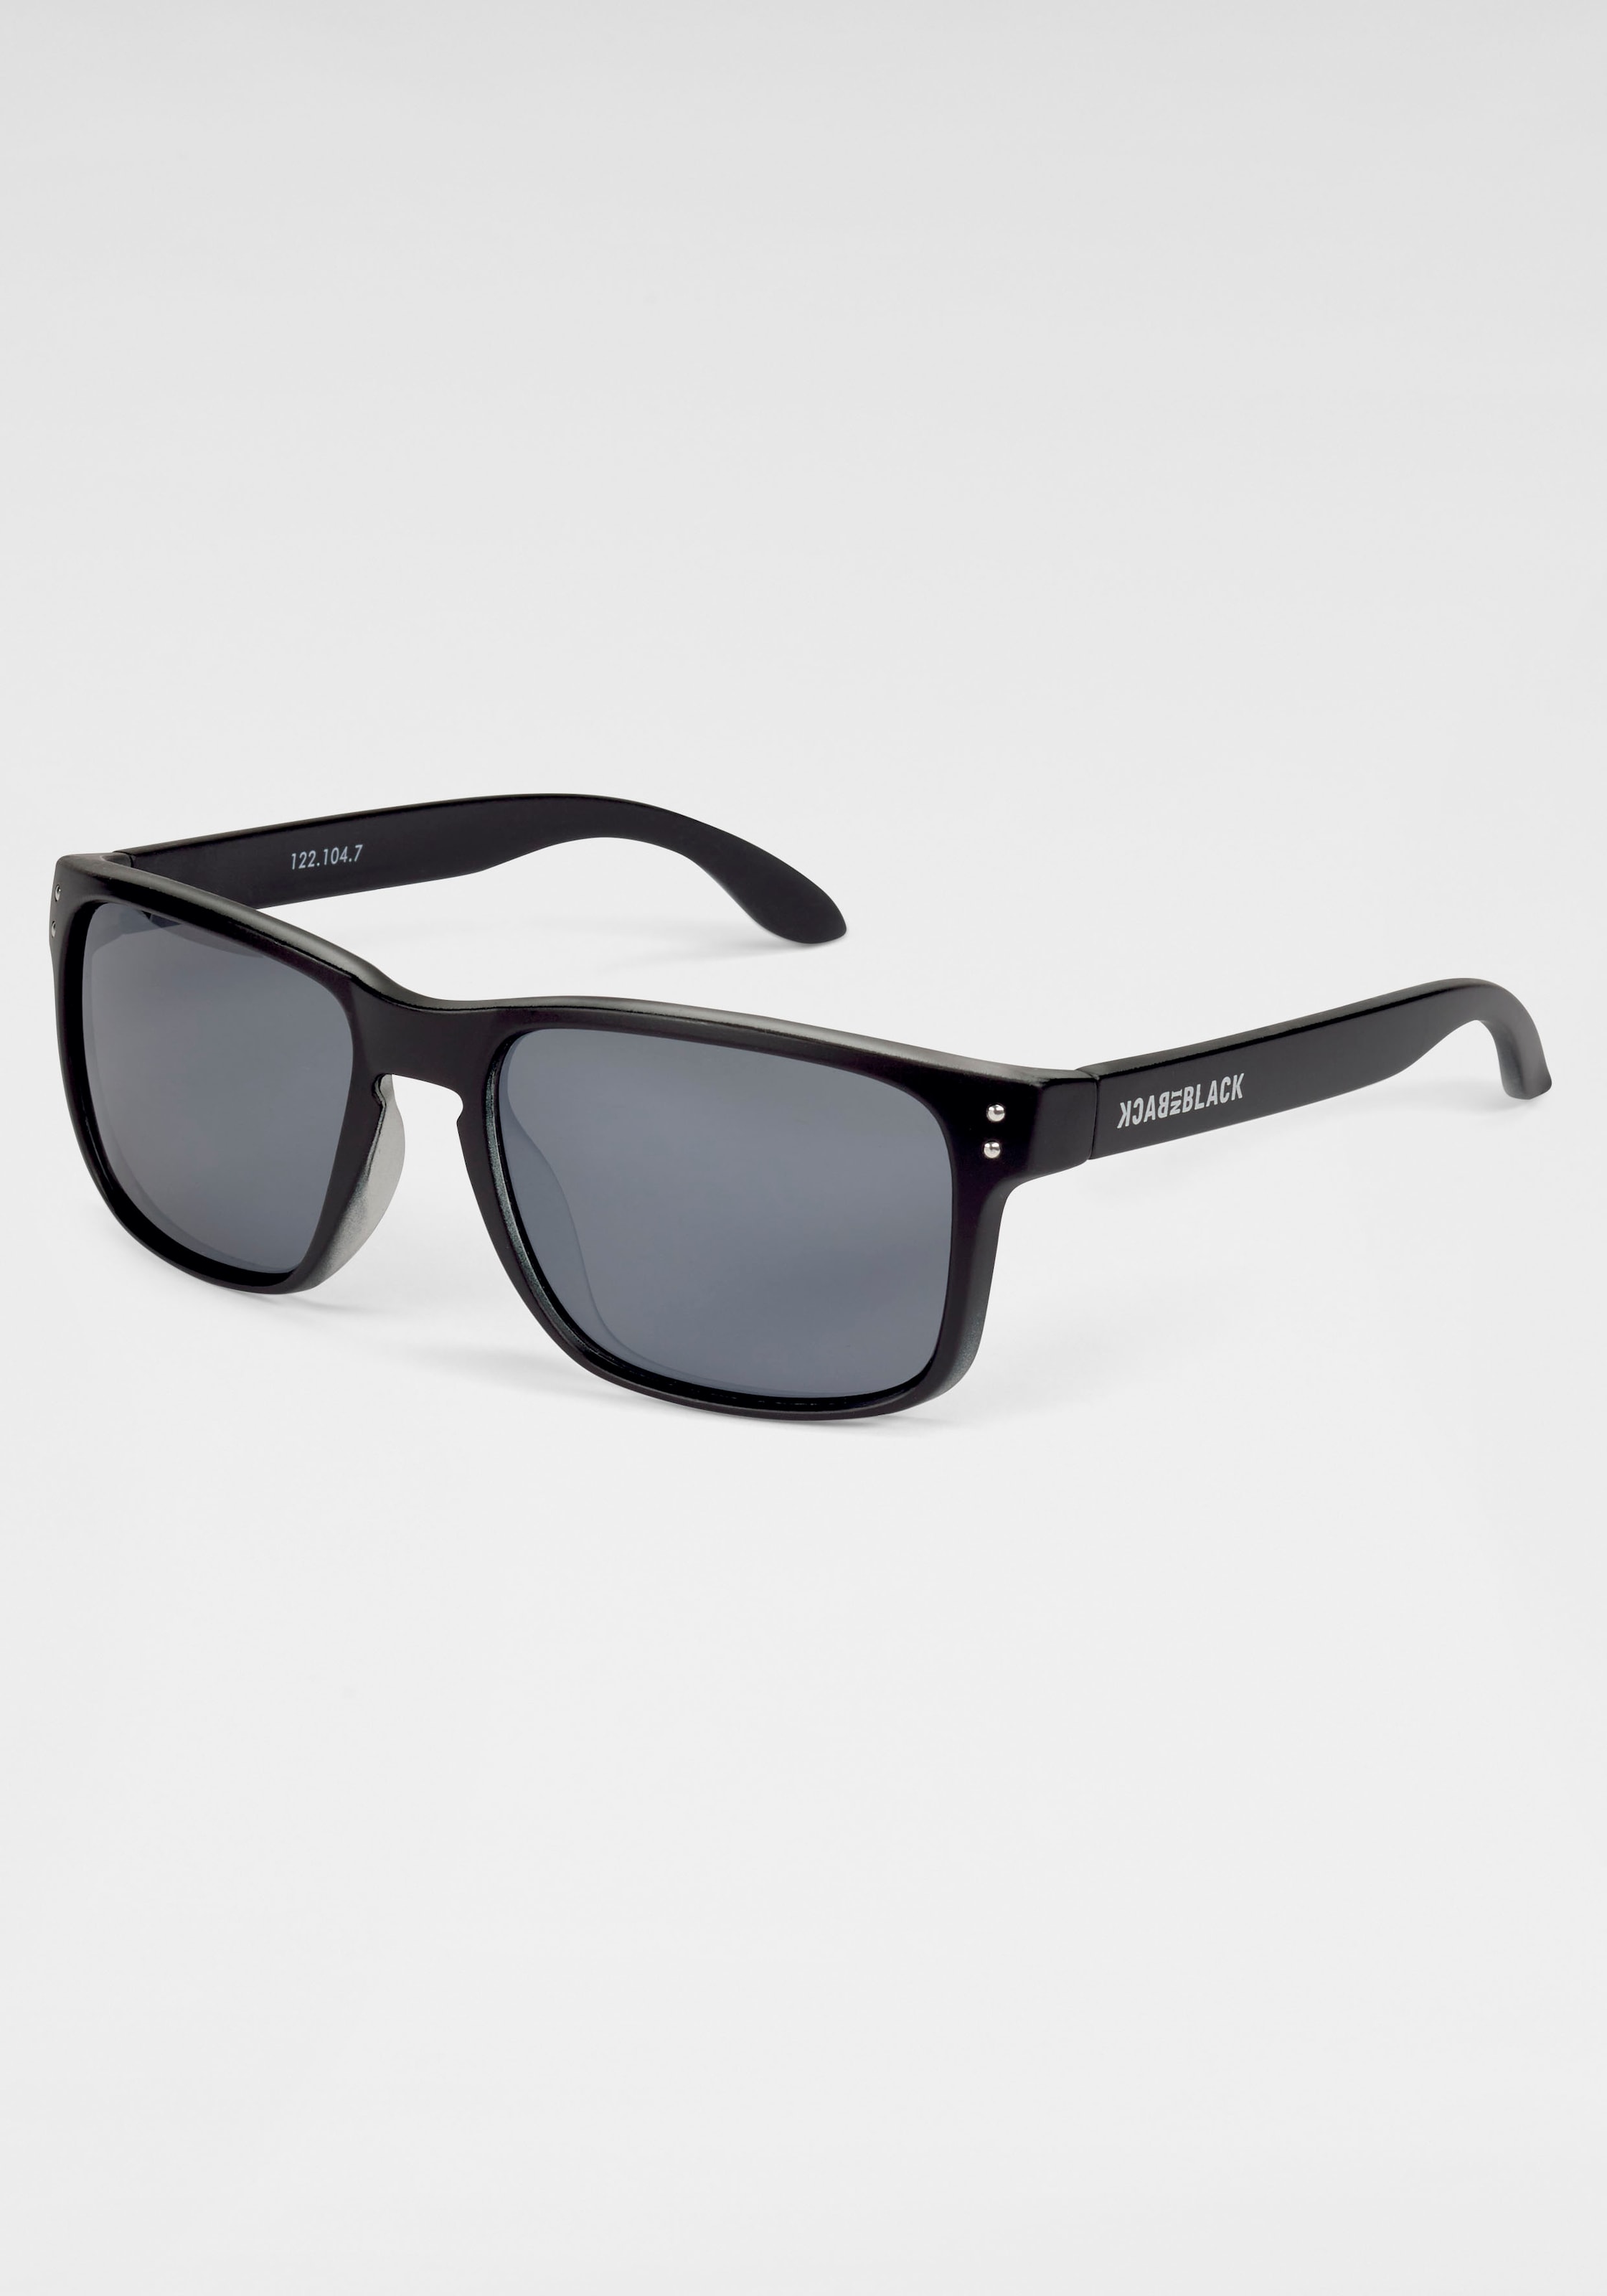 BACK IN BLACK Eyewear Sonnenbrille, Vollrand Sonnenbrille Kunststoff schwarz mit dunklen Gläsern